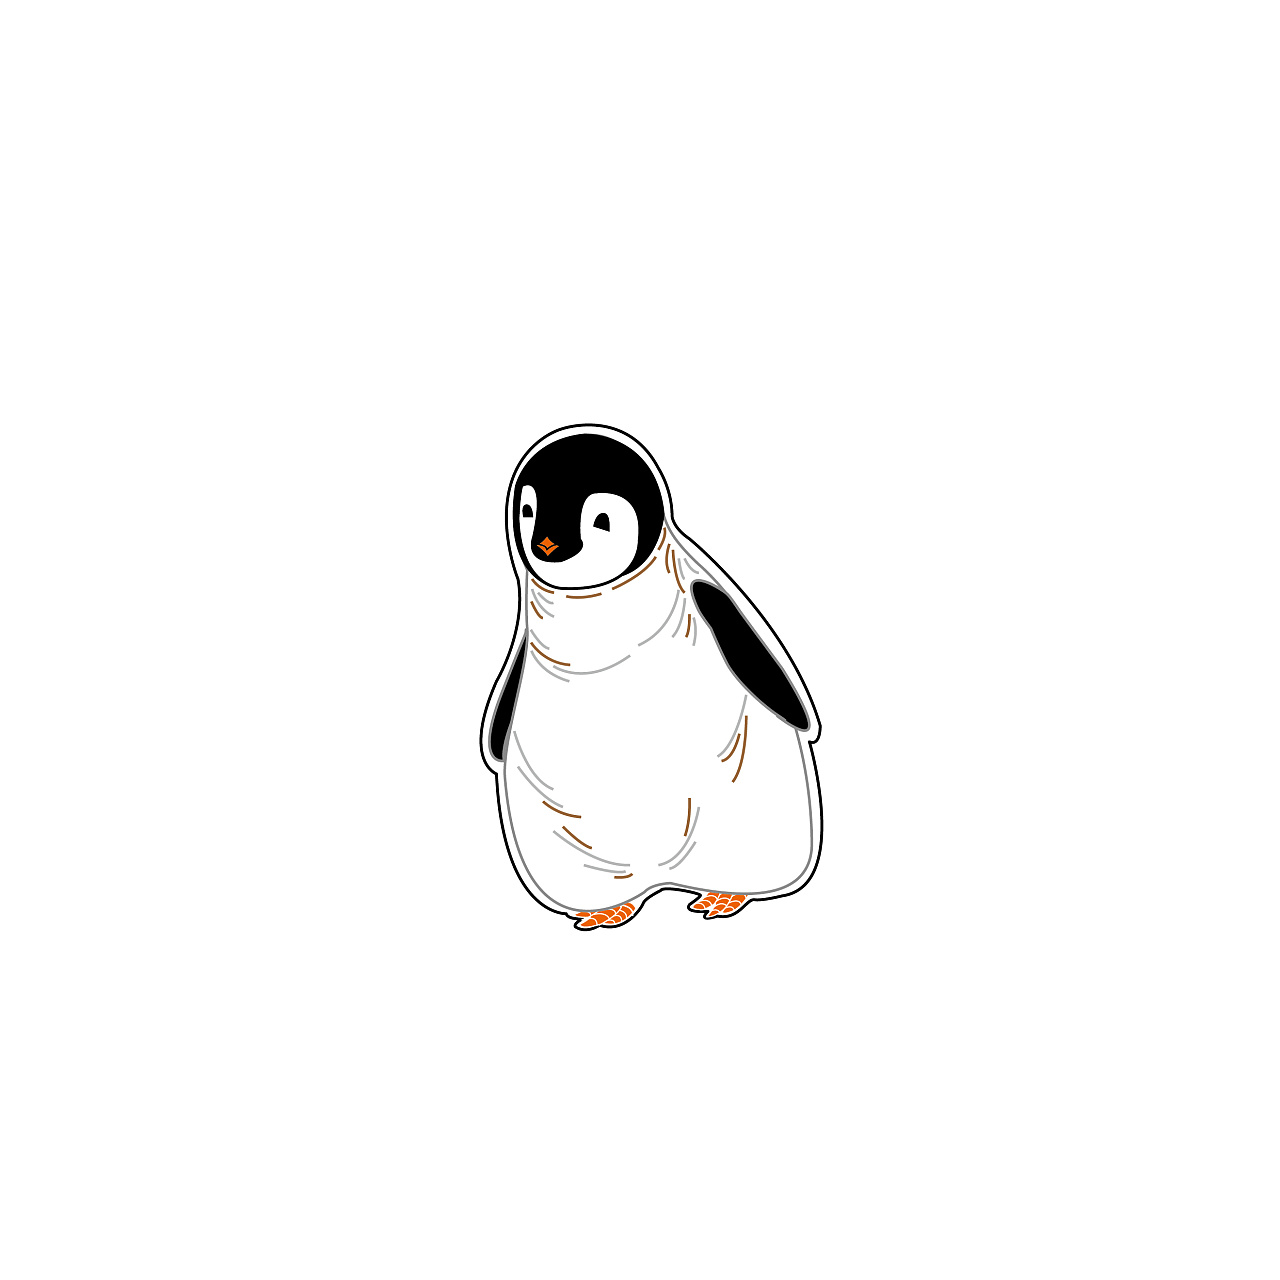 企鹅简笔画 企鹅简笔画图片大全 - 水彩迷